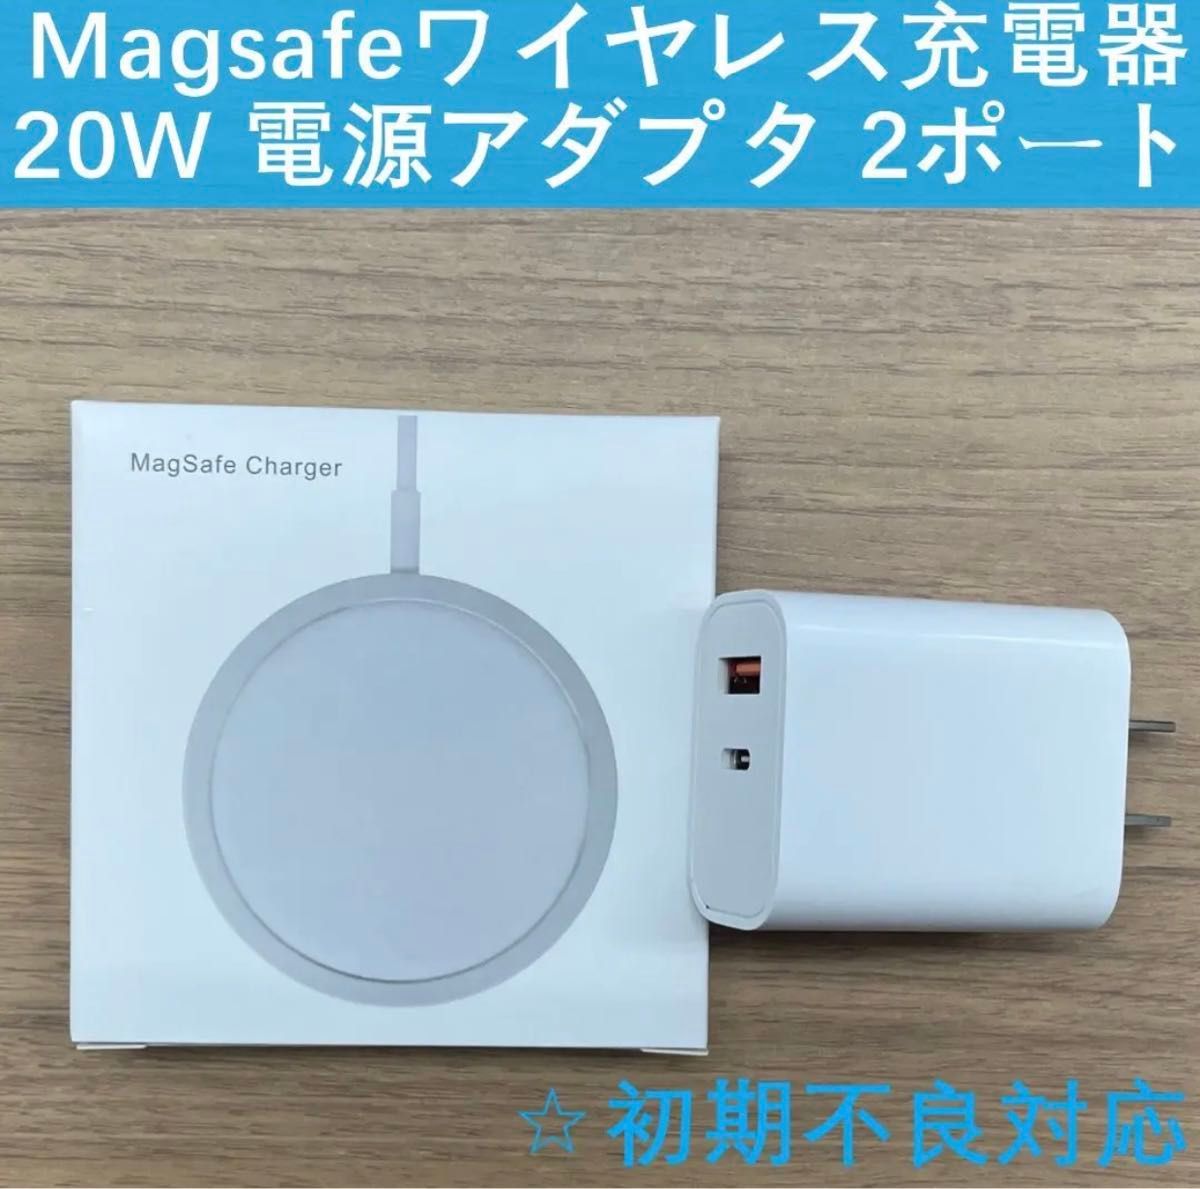 Magsafe ワイヤレス充電器 + 20W 電源アダプタ 2ポート セット